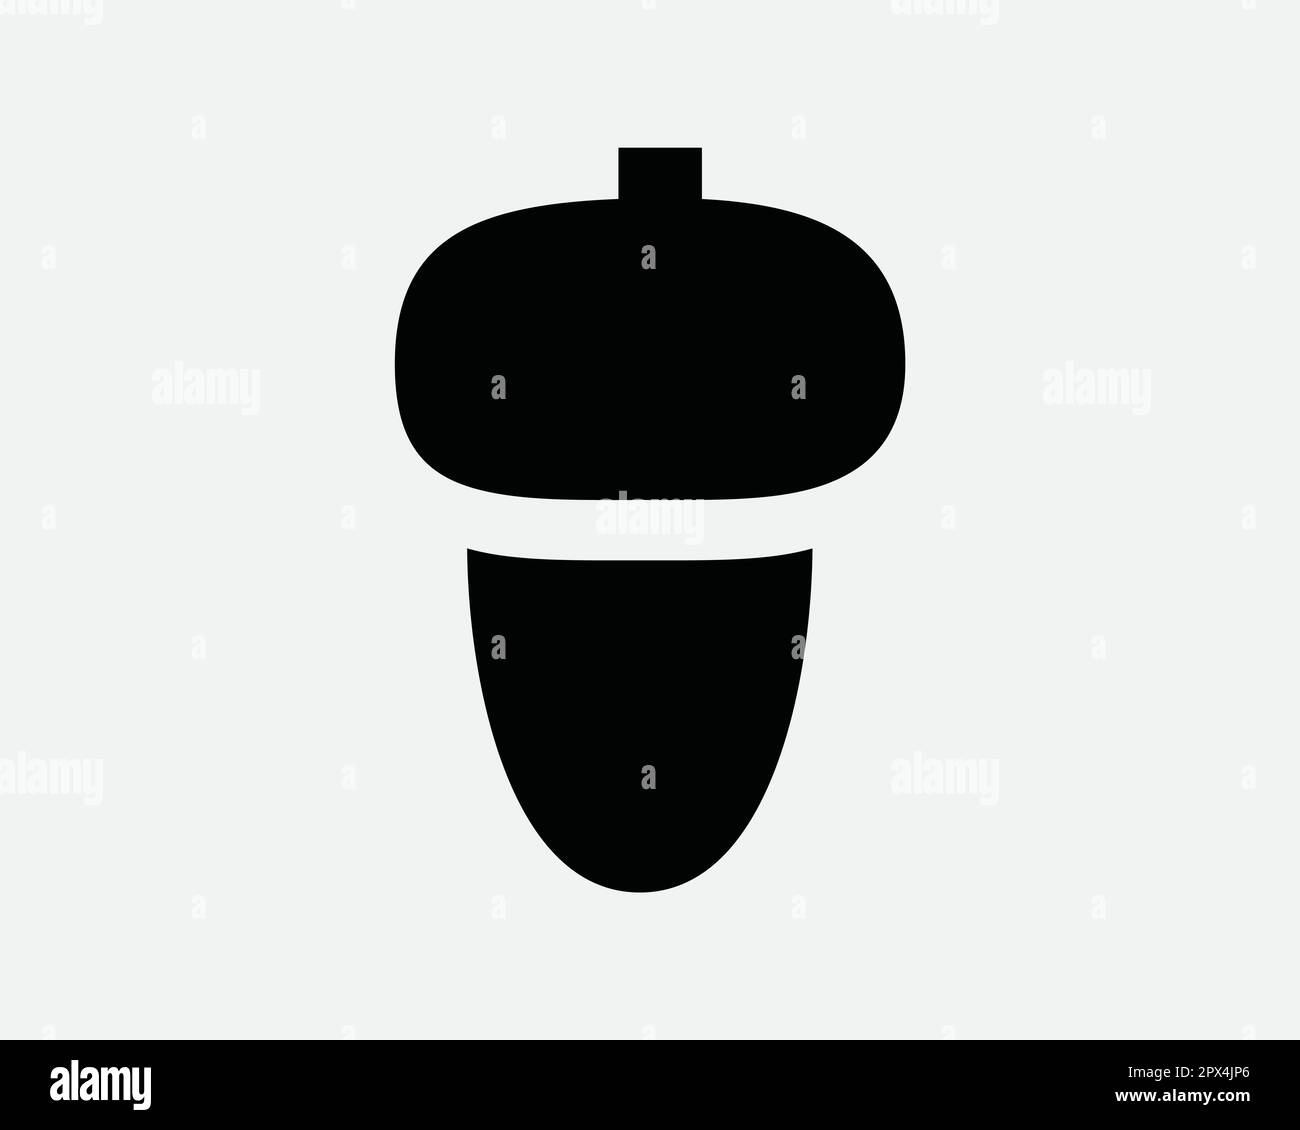 Acorn Nut Fruit Herbstsaison einfaches Schwarz-Weiß-Linien-Symbol Zeichensymbol Vektorgrafik Clipart Illustration Stock Vektor